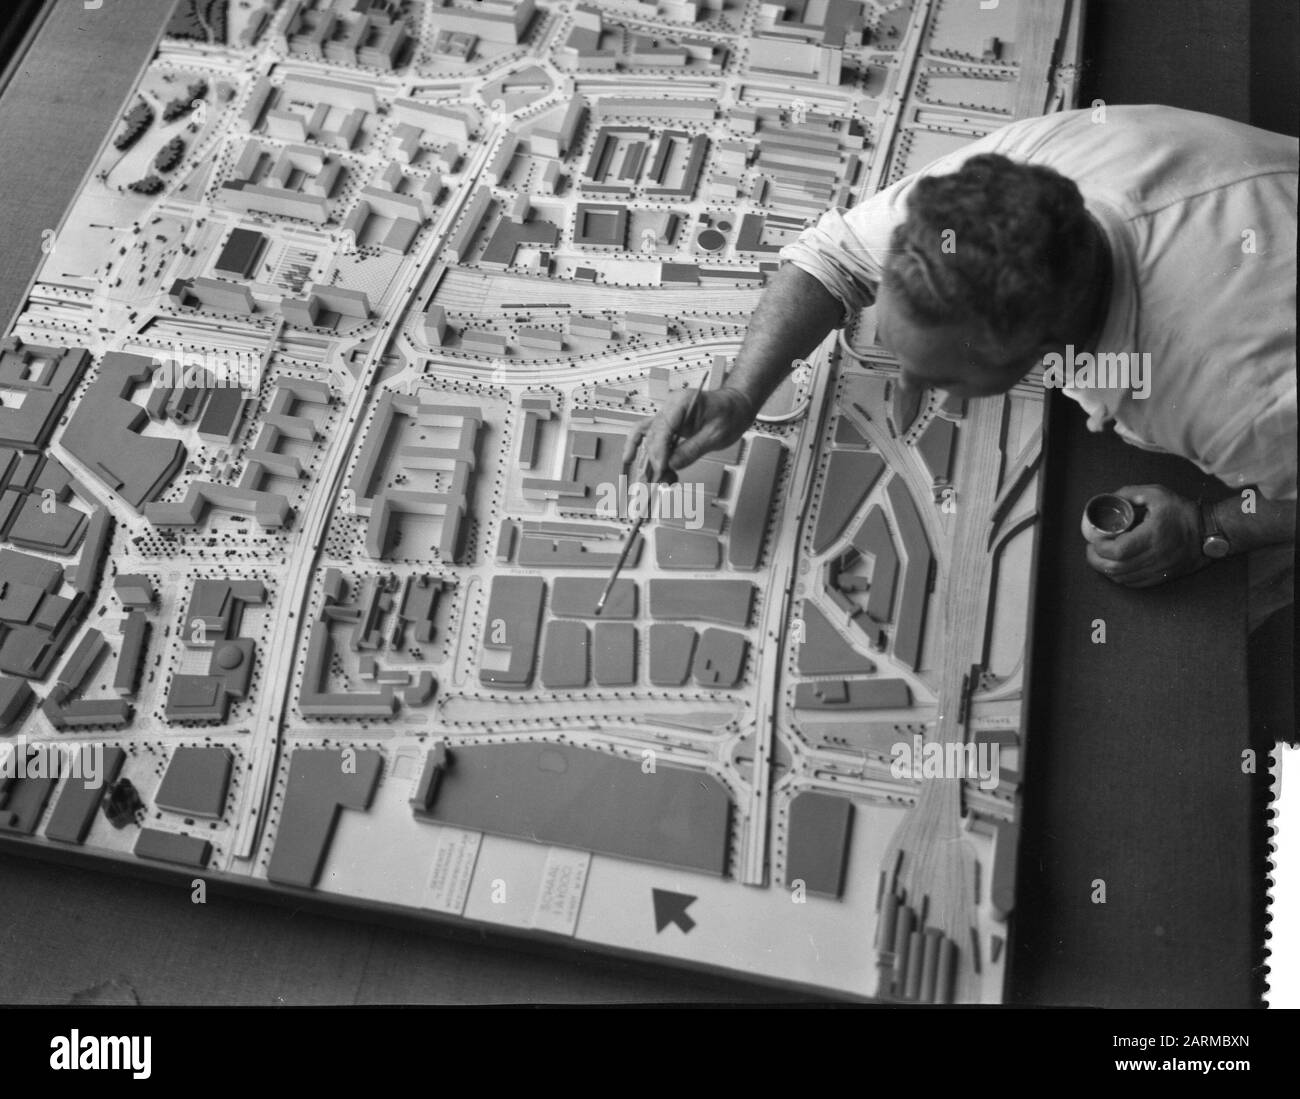 Preparativi per la mostra Autostrade in città al Fodor Museum Data: 11 novembre 1959 Parole Chiave: Preparativi, mostre Nome personale: Fodor Museum Foto Stock